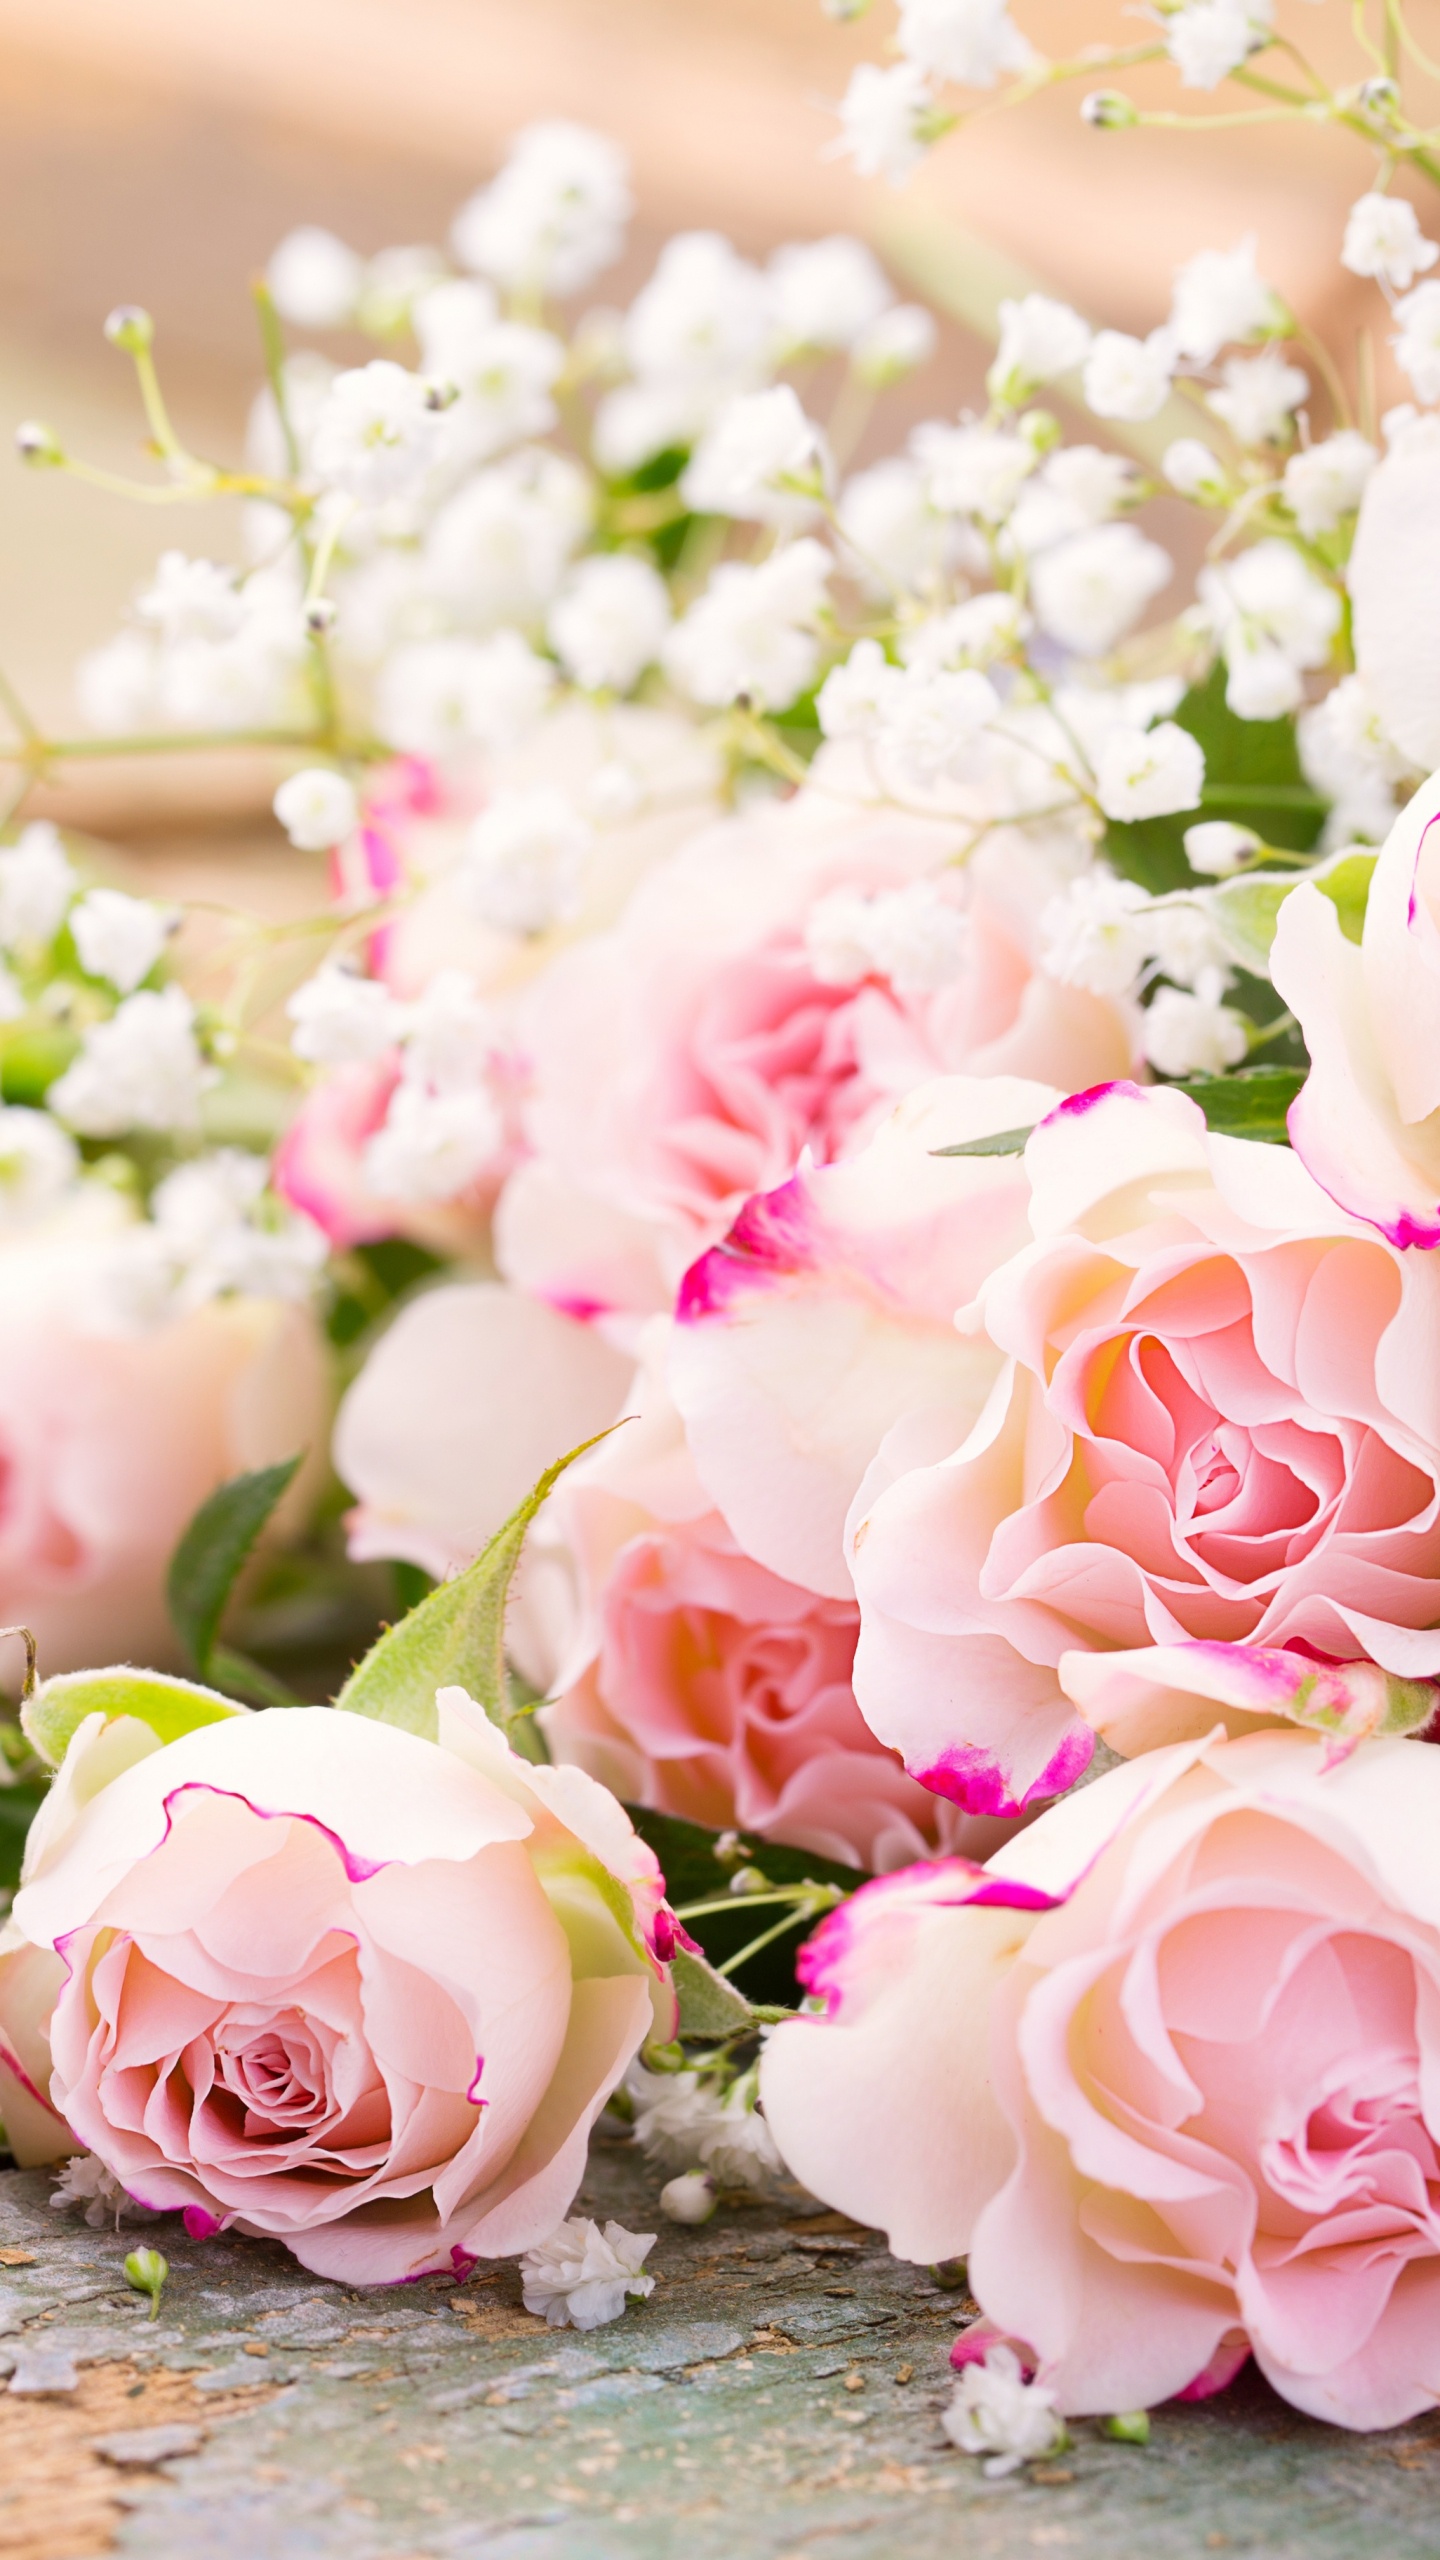 玫瑰花园, 粉红色, 花安排, 花卉设计, 切花 壁纸 1440x2560 允许